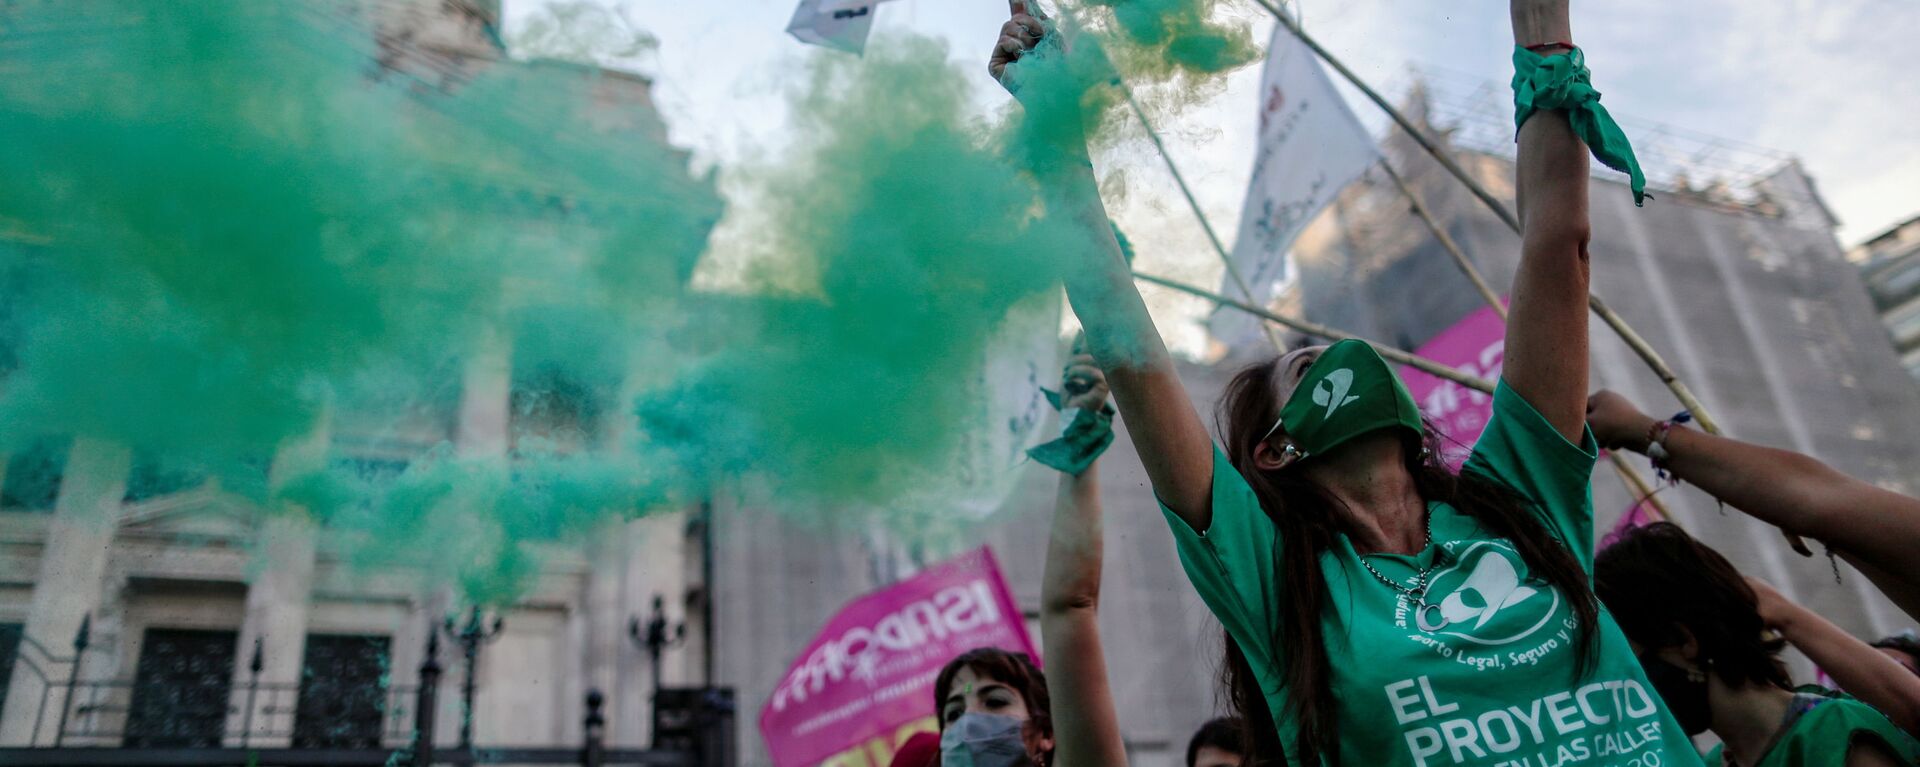 Activistas participan en manifestación a favor de legalizar el aborto, en Buenos Aires (Argentina), el 18 de noviembre del 2020 - Sputnik Mundo, 1920, 10.02.2021